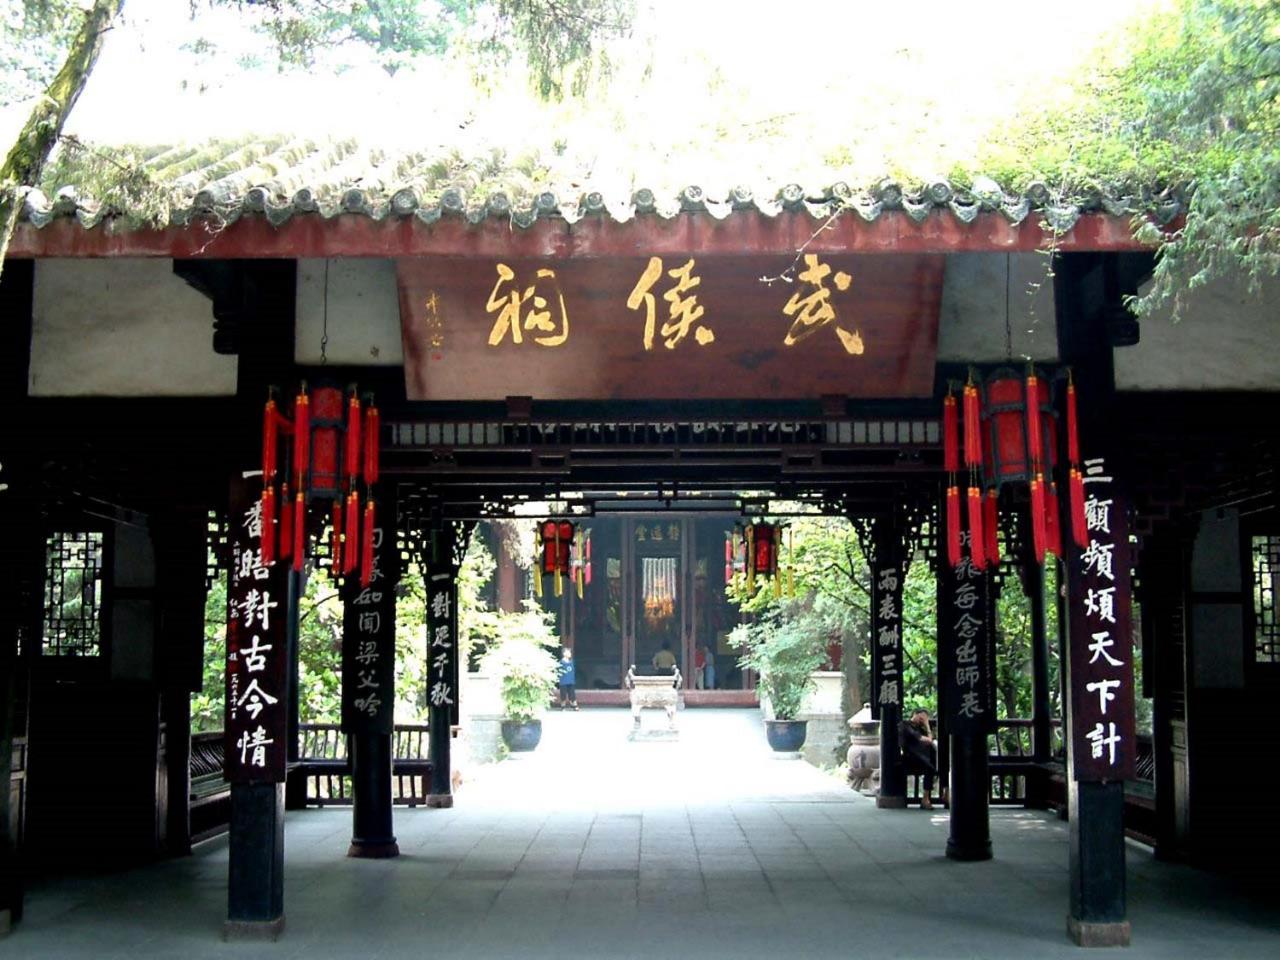 Longemont Hotel Chengdu （The Longemont Hotels） Exterior photo